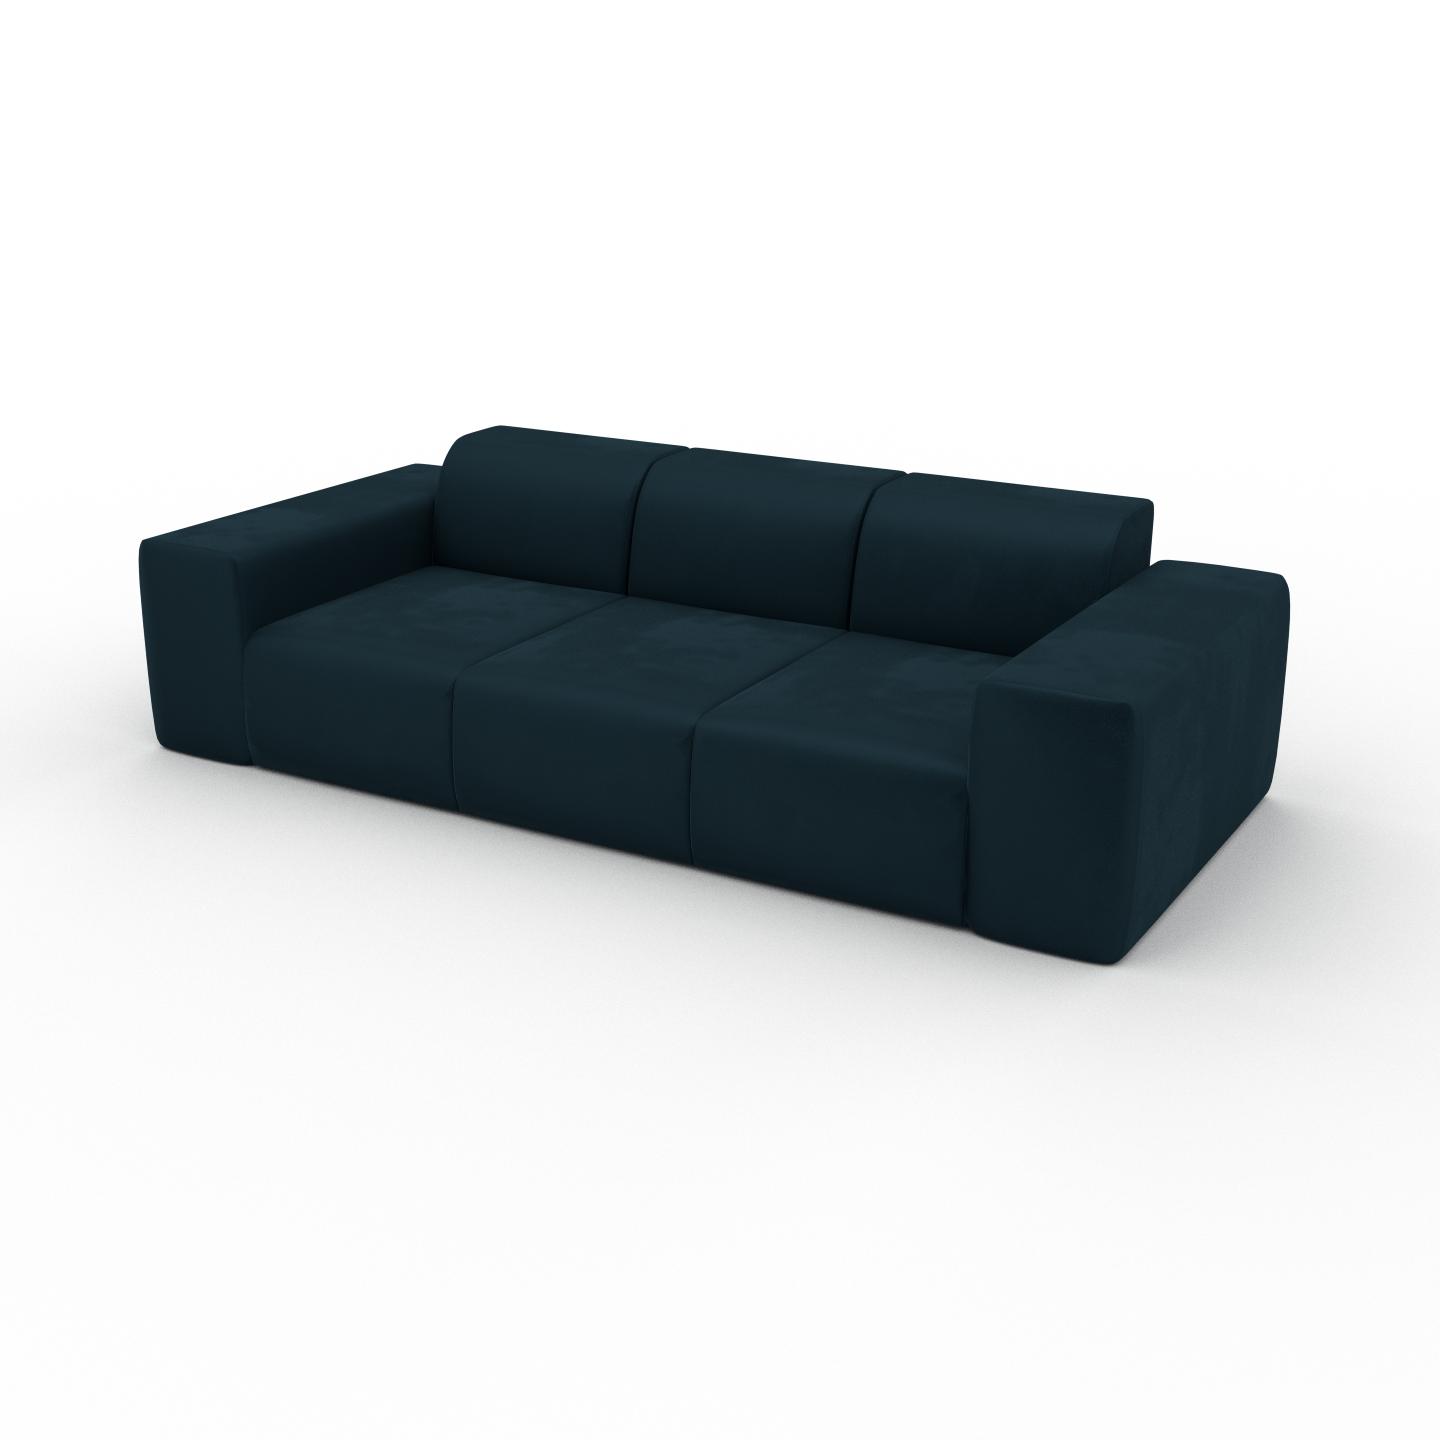 MYCS Sofa Samt Petrolblau - Moderne Designer-Couch: Hochwertige Qualität, einzigartiges Design - 246 x 72 x 107 cm, Komplett anpassbar